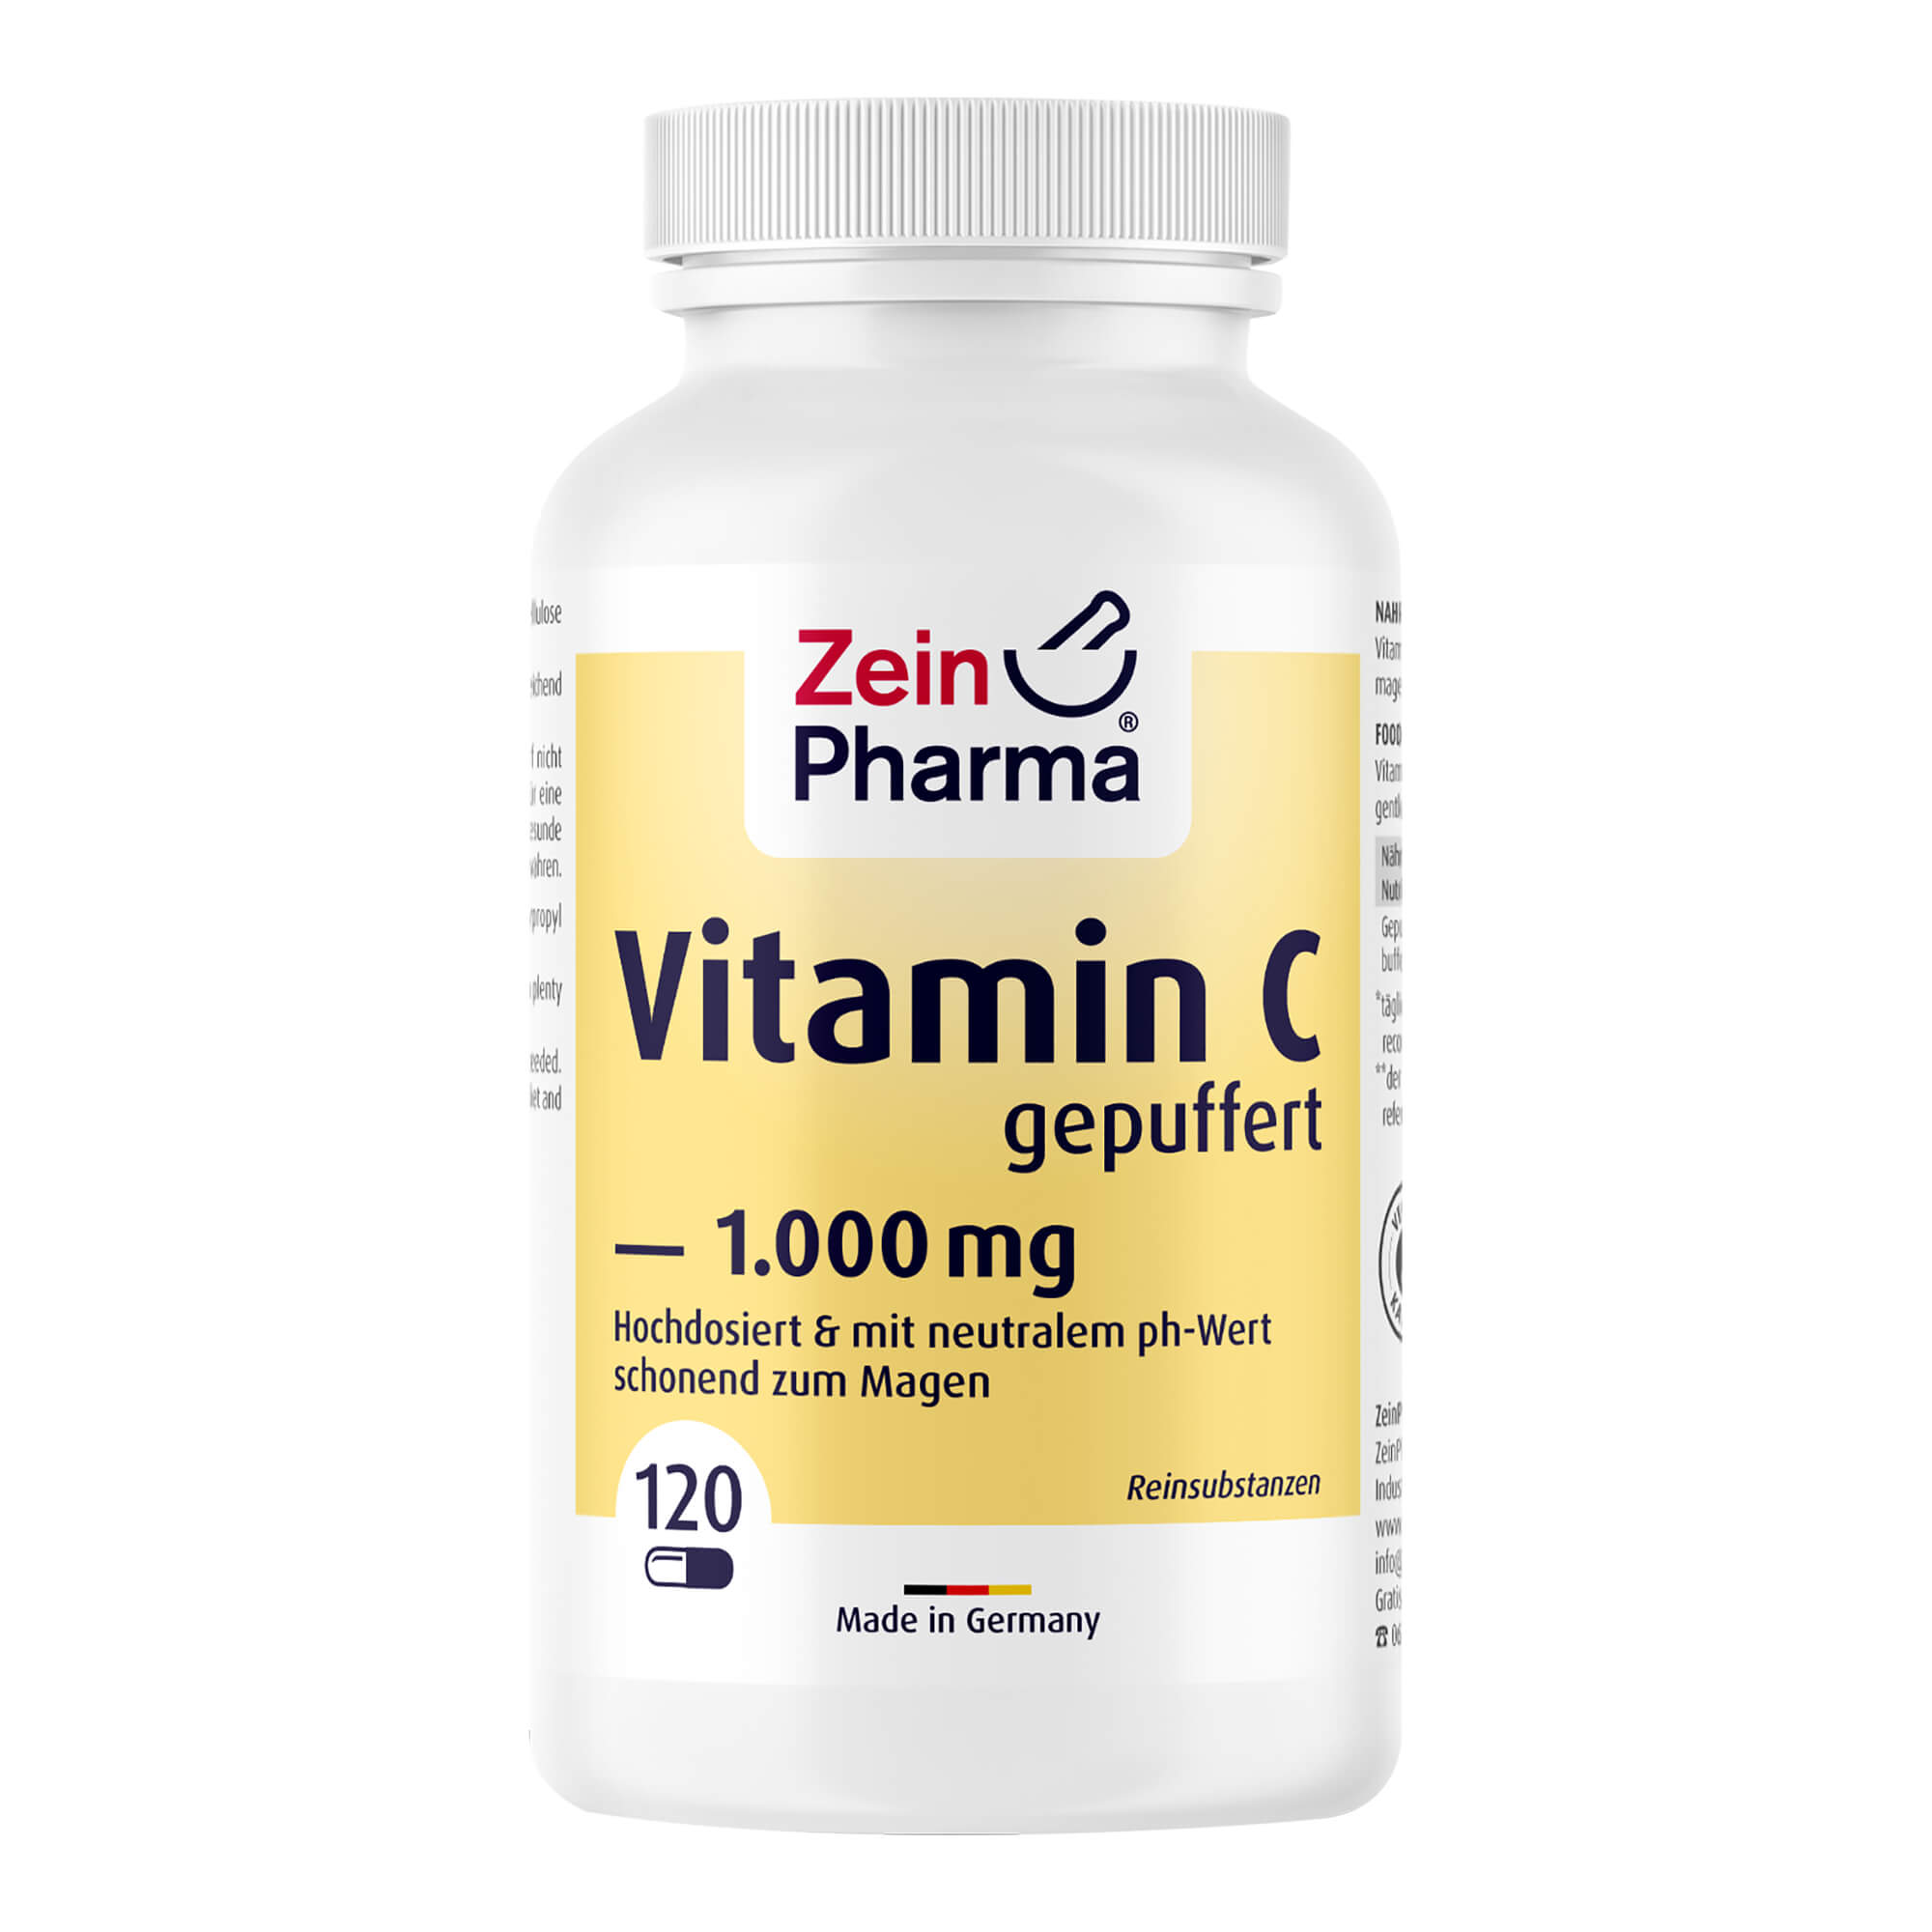 Nahrungsergänzungsmittel mit Vitamin C mit neutralem pH-Wert.